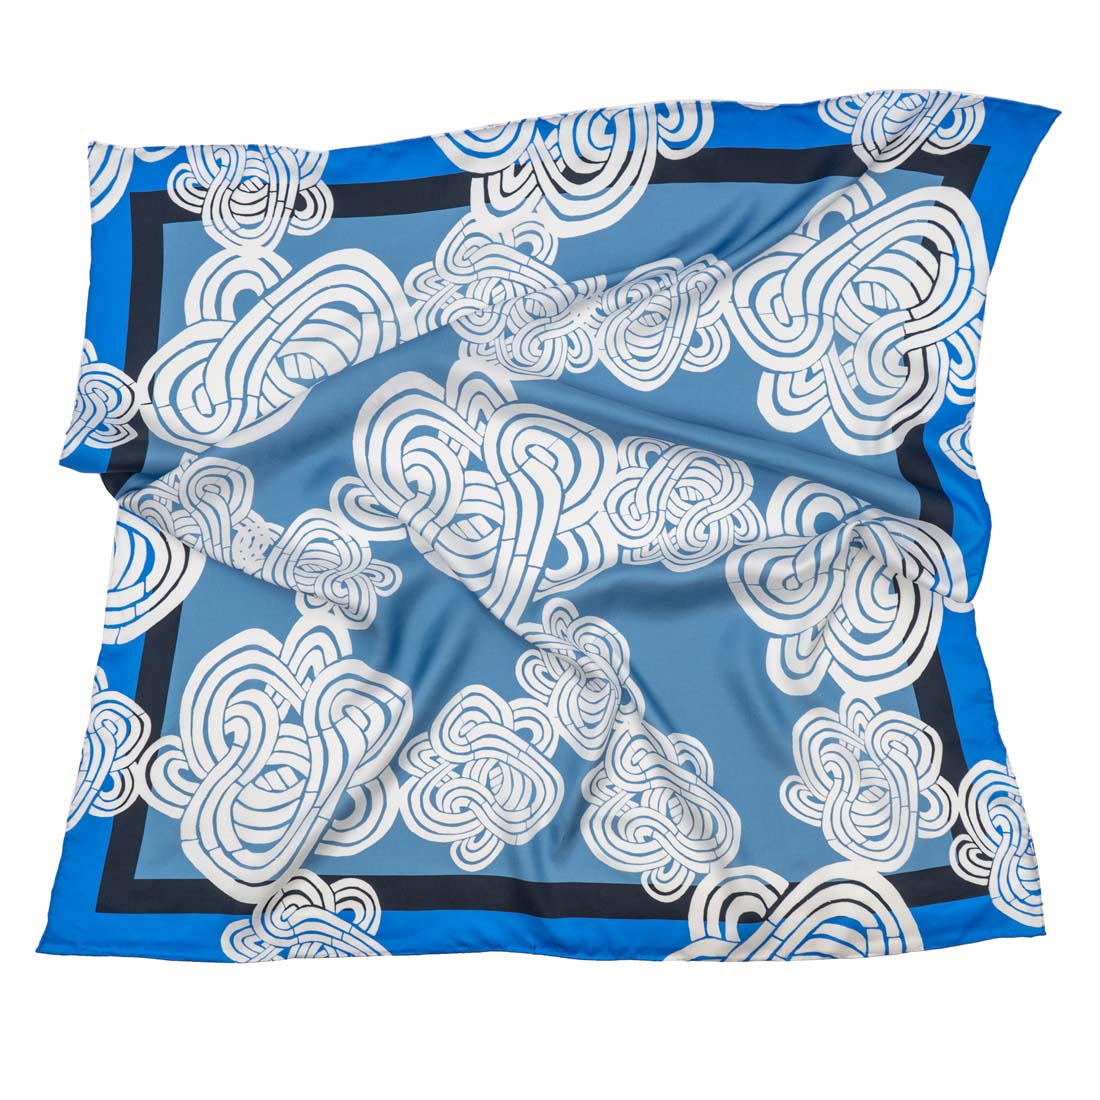 silk scarf pillow